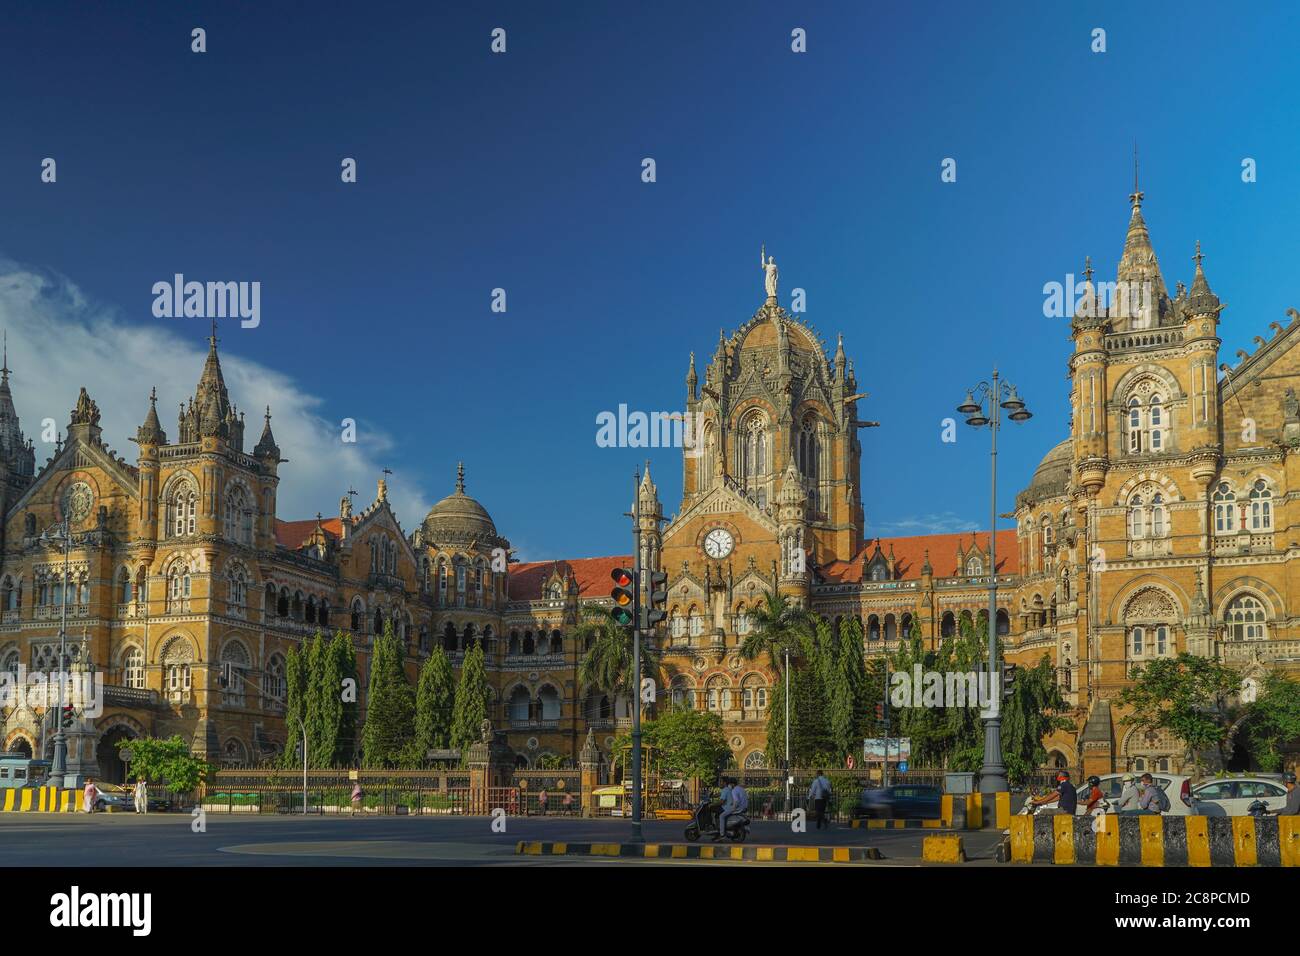 Chhatrapati Shivaji Terminus (CST) anciennement Victoria Terminus, est un site du patrimoine mondial de l'UNESCO, Mumbai, Maharashtra Inde 2020 Banque D'Images